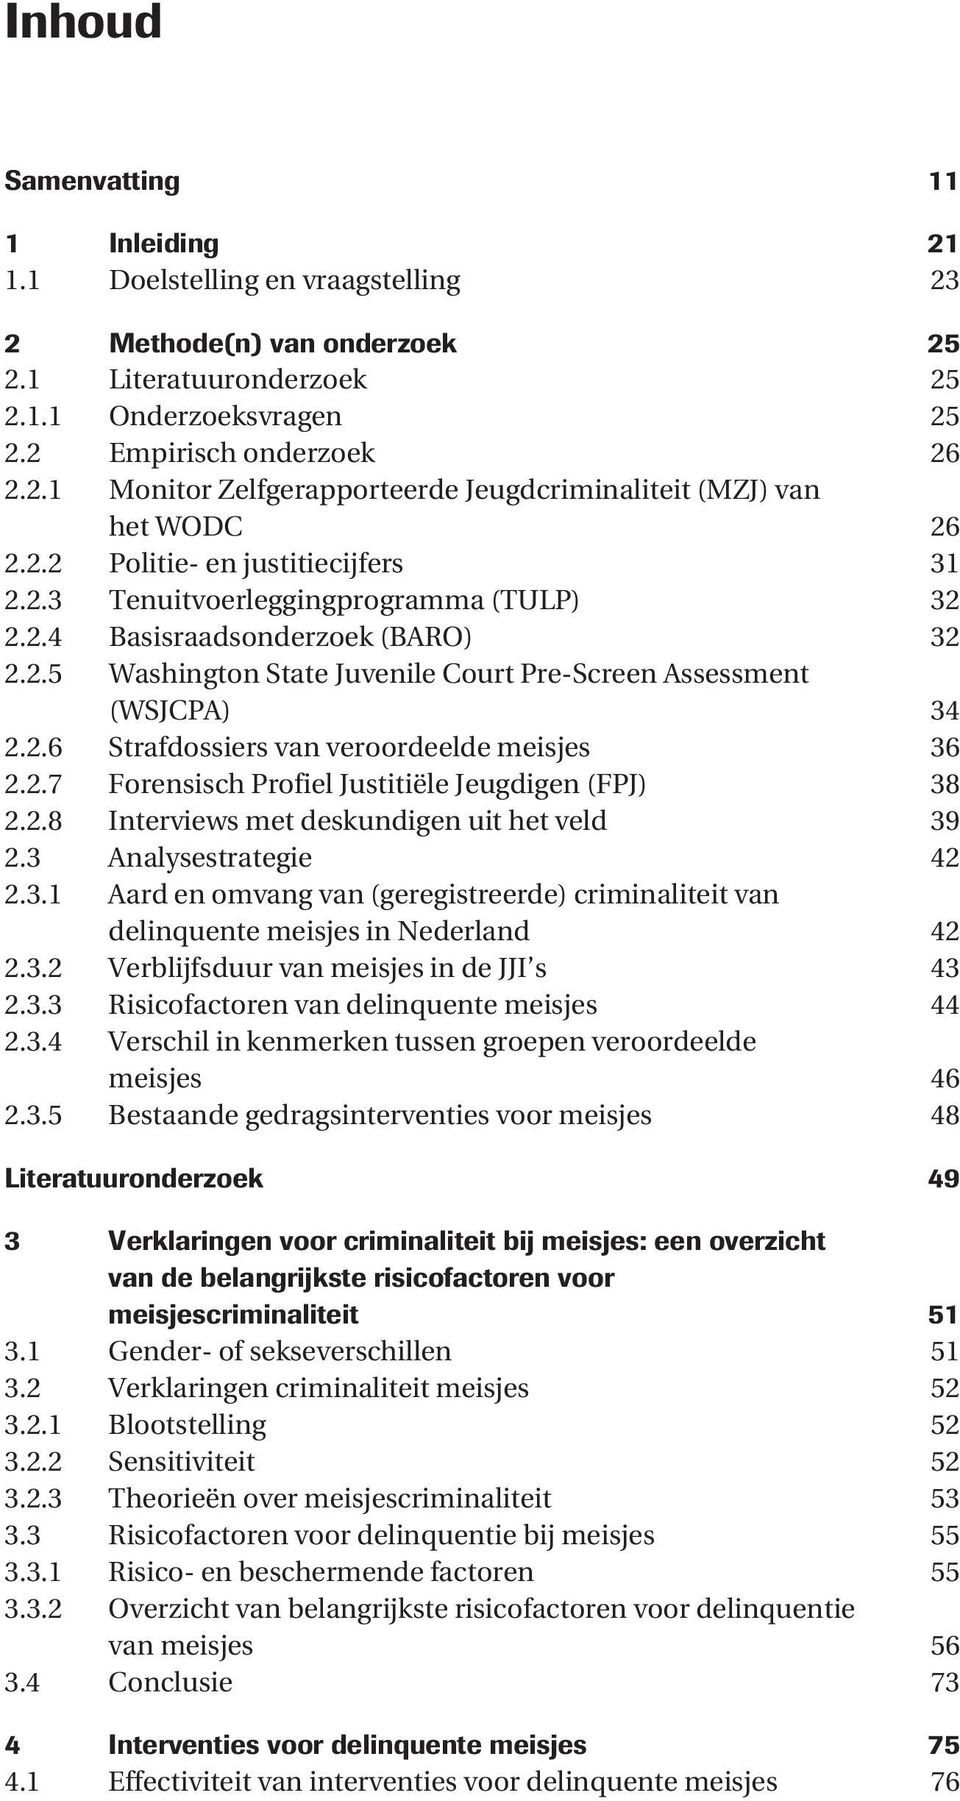 2.7 Forensisch Profiel Justitiële Jeugdigen (FPJ) 38 2.2.8 Interviews met deskundigen uit het veld 39 2.3 Analysestrategie 42 2.3.1 Aard en omvang van (geregistreerde) criminaliteit van delinquente meisjes in Nederland 42 2.